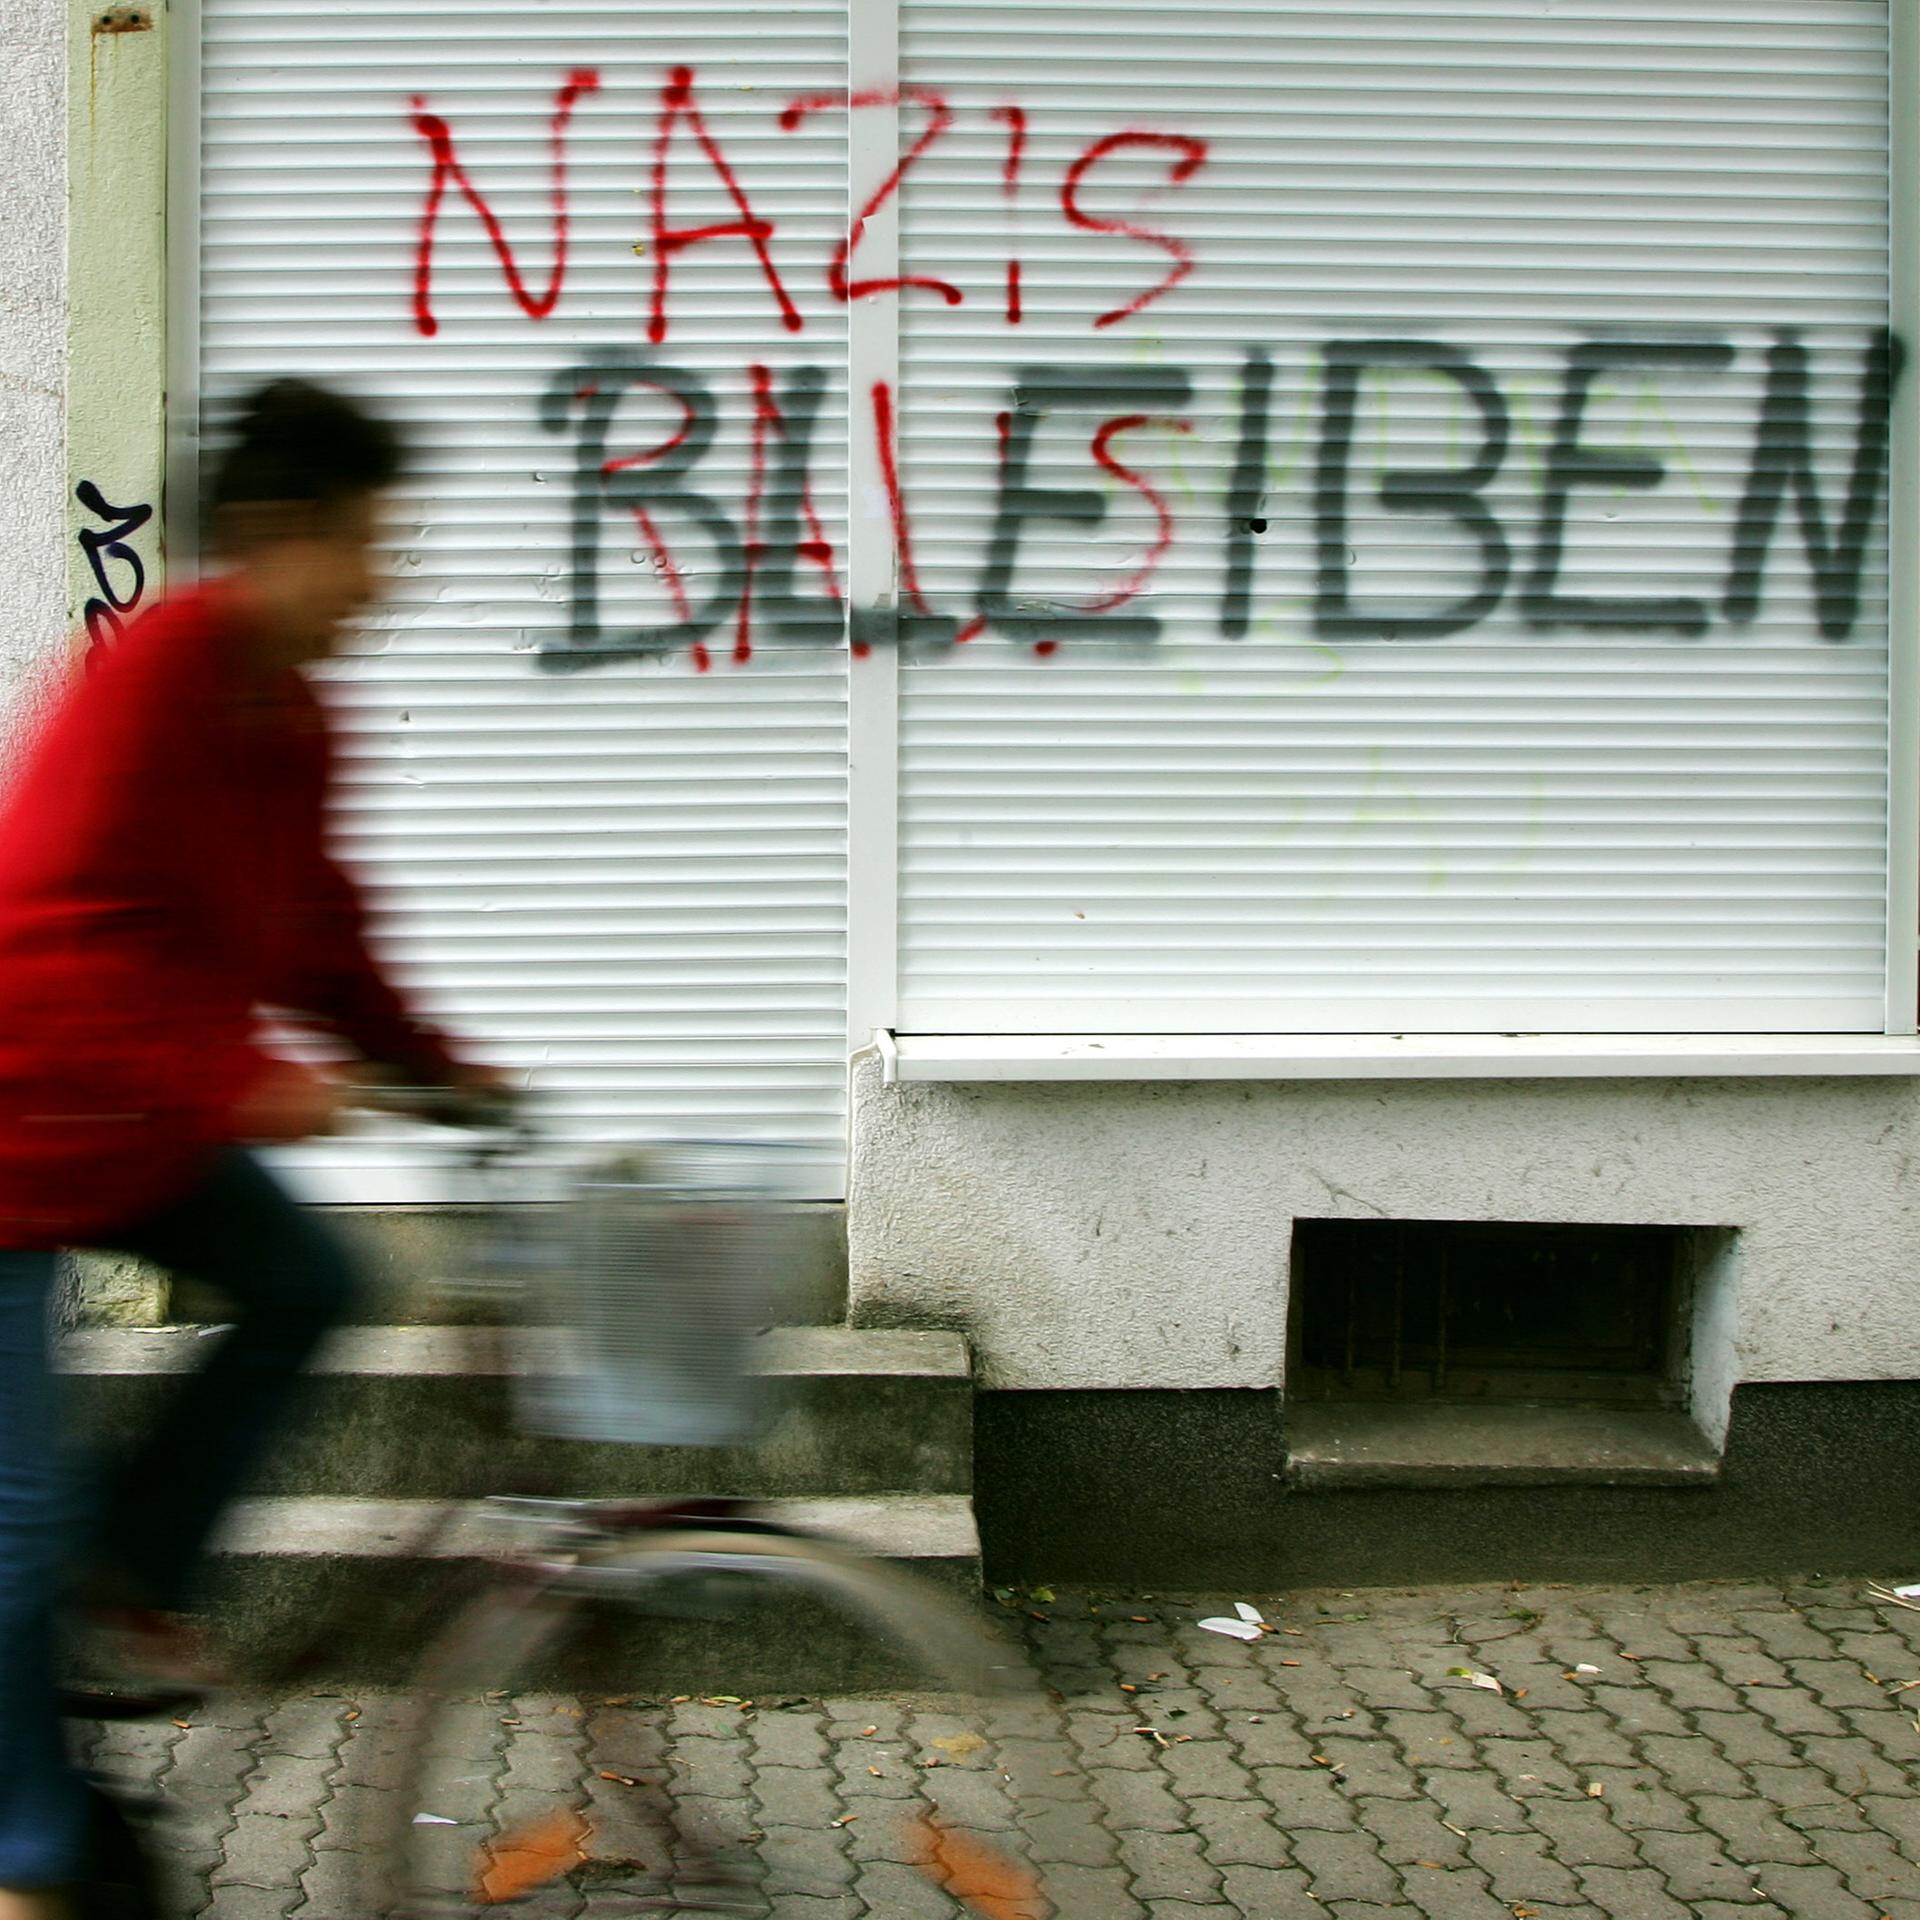 Rassistisch motivierte Gewalt – Treibjagden und Brandanschläge in deutschen Romanen